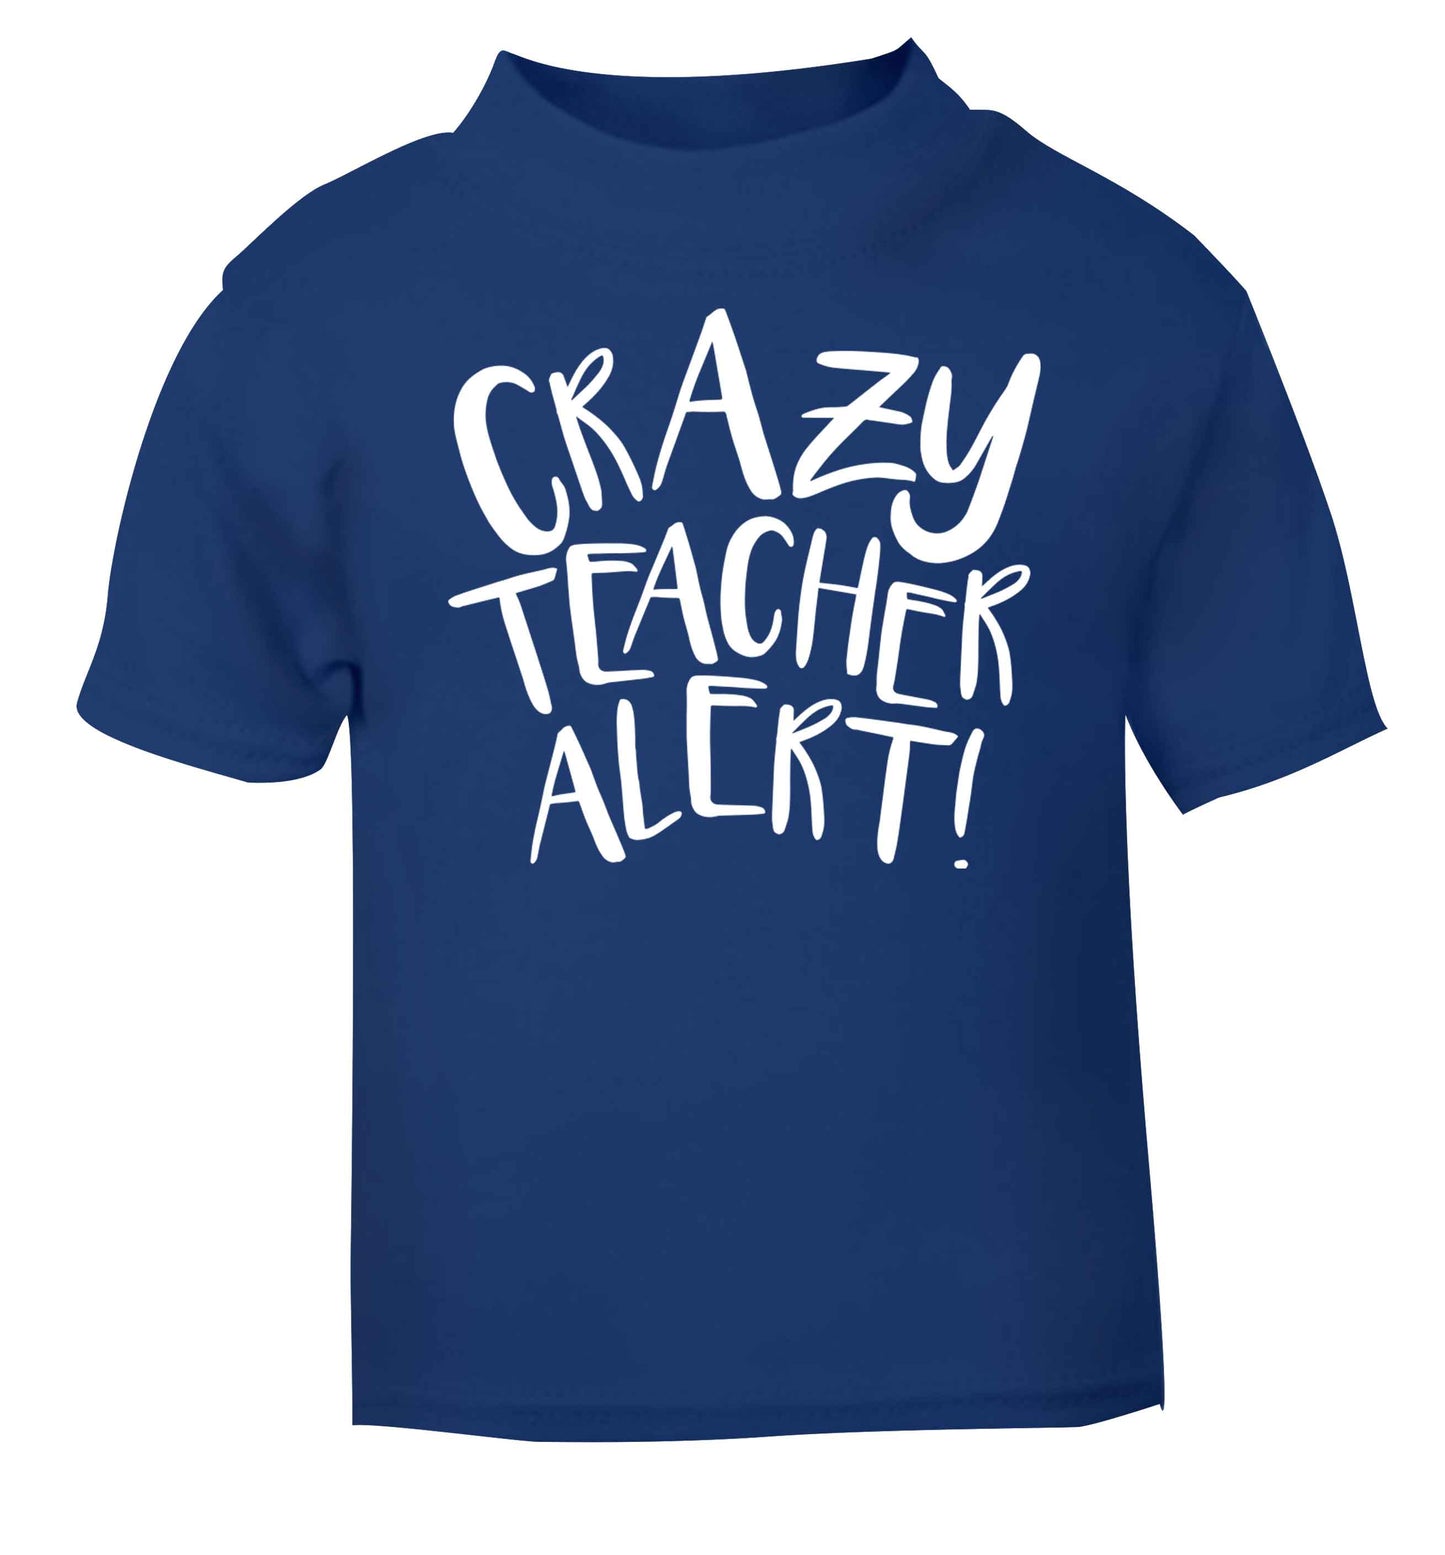 Crazy teacher alert blue baby toddler Tshirt 2 Years